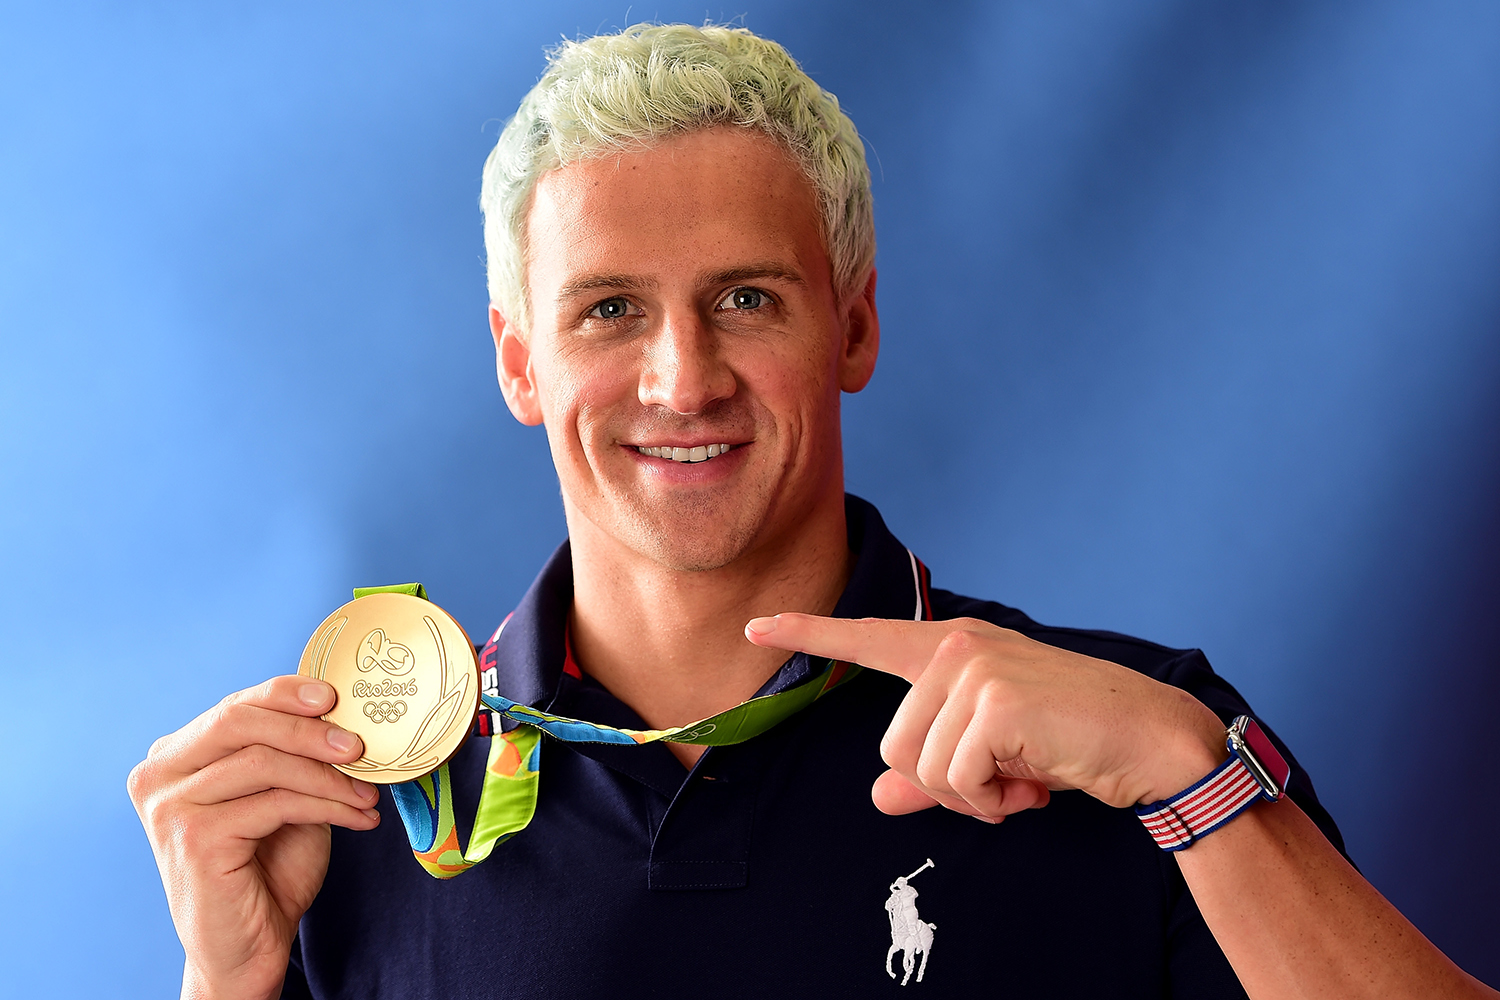 Medalhista olímpico, Ryan Lochte é pego no doping por causa de foto